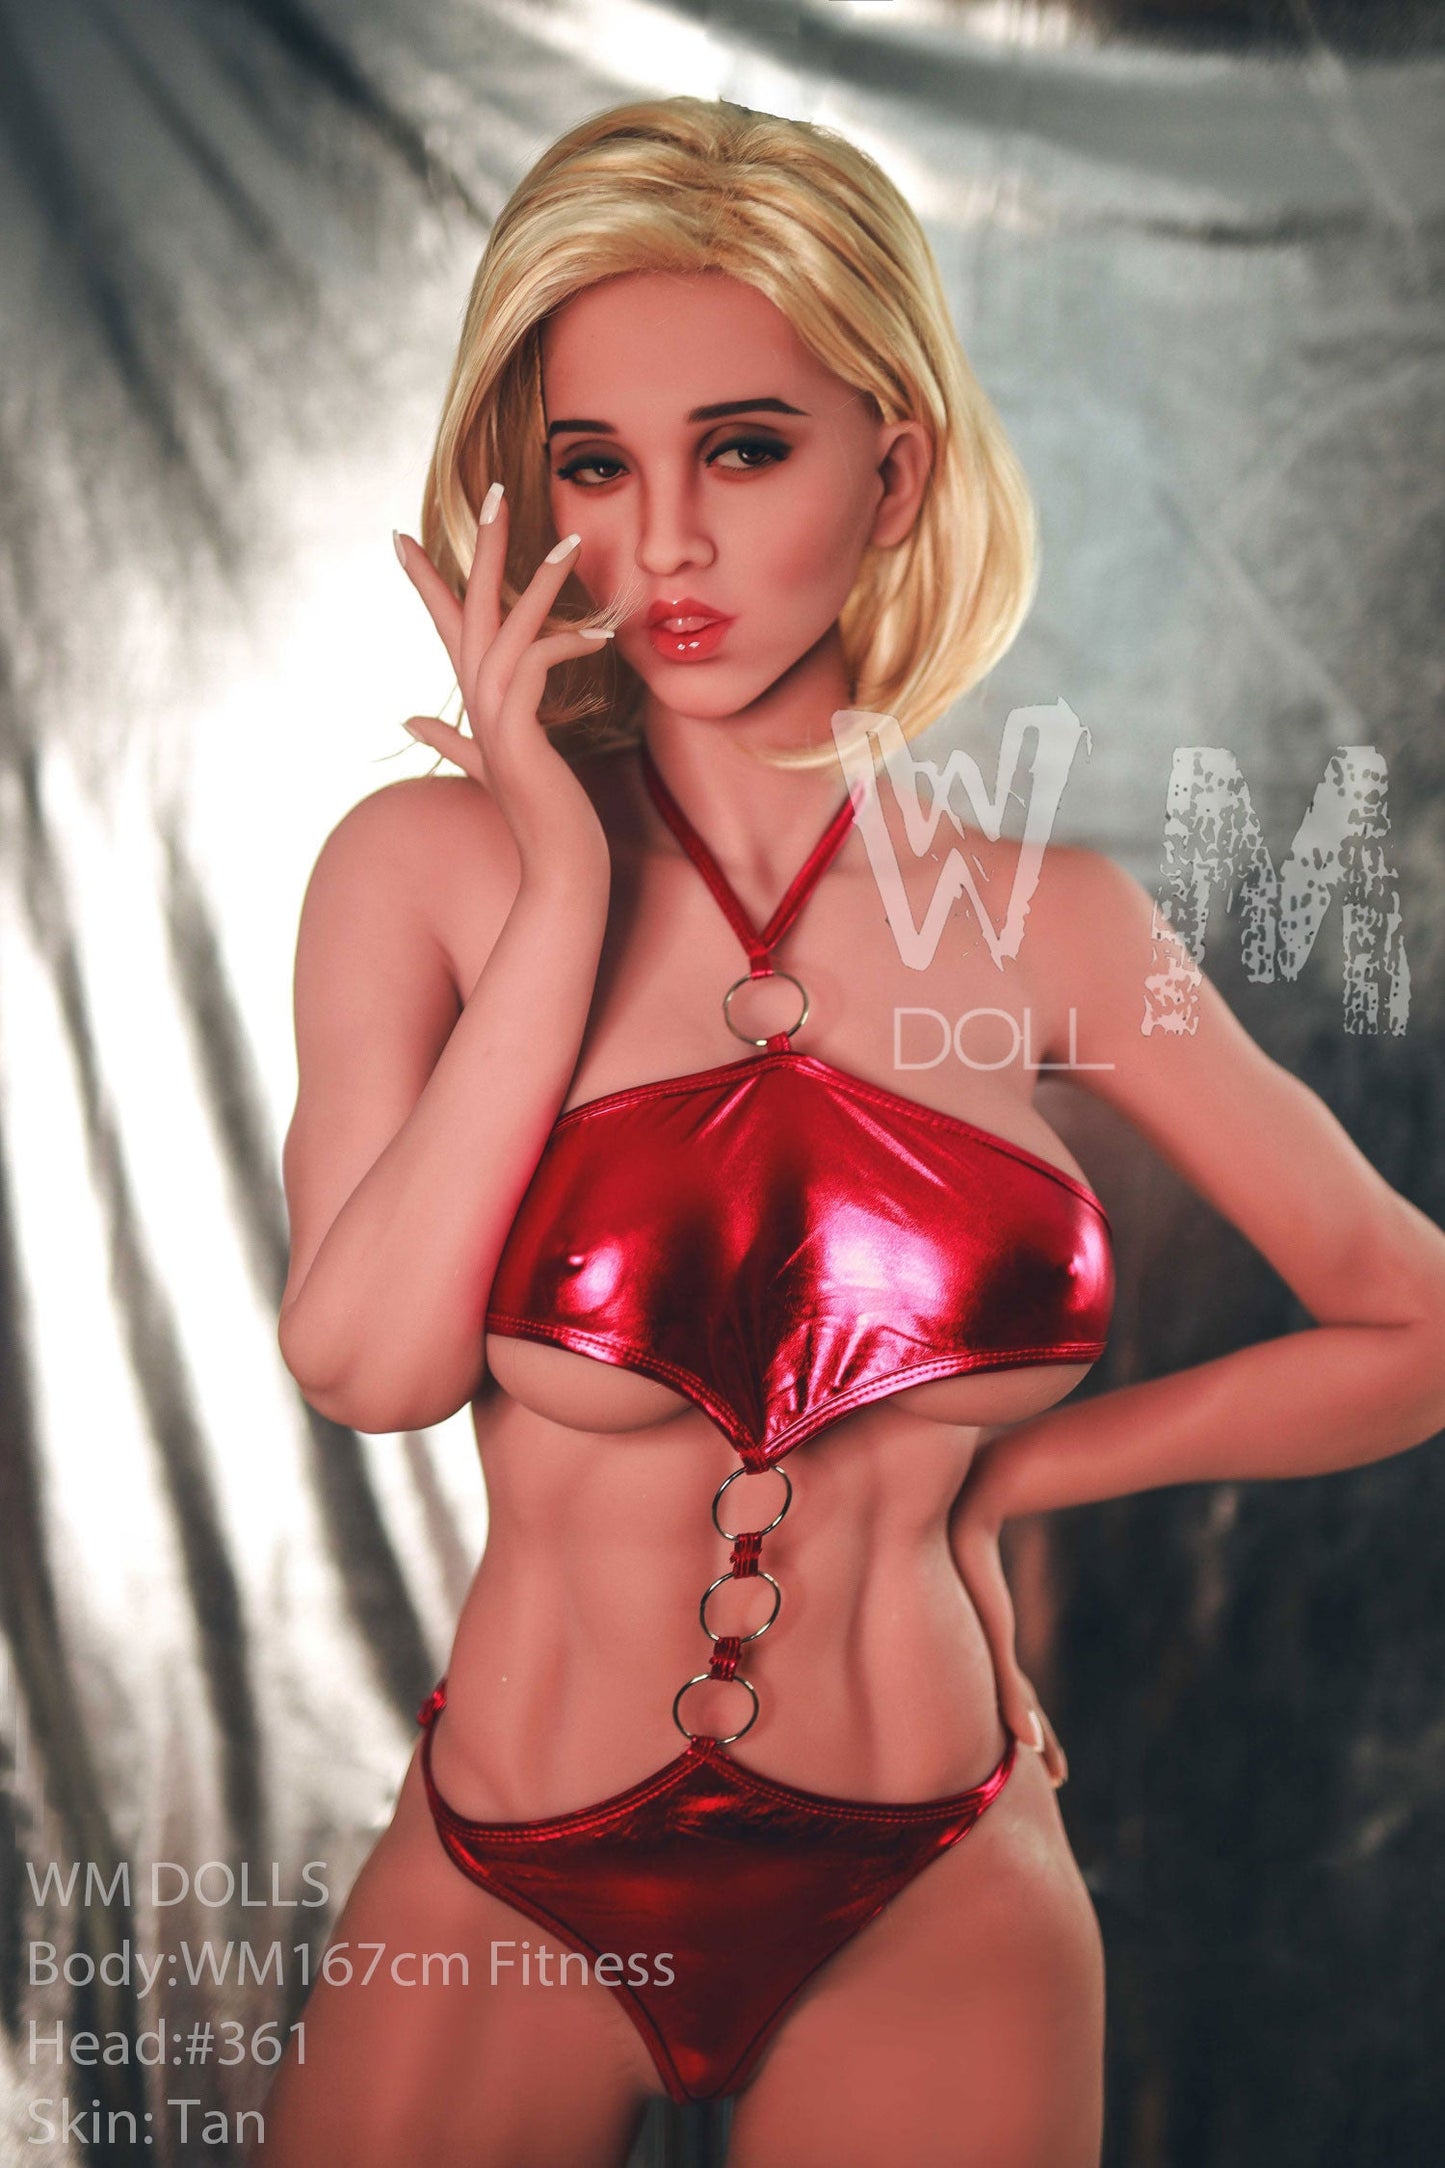 Vienna: Hot Blonde European, E-Cup, 167cm, WM Sex Doll, Head #361